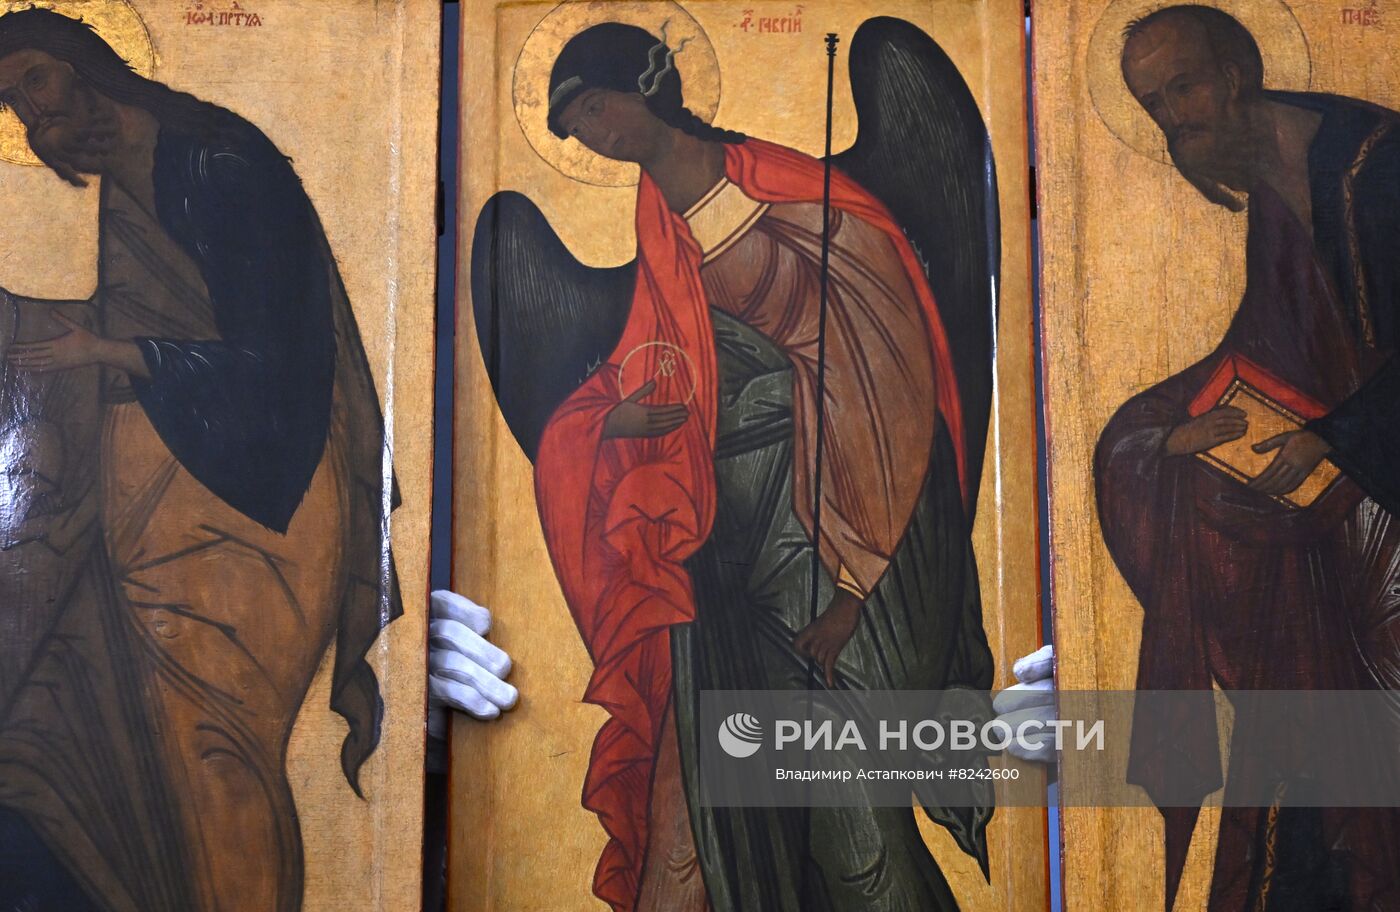 Монтаж отреставрированных икон в храме Василия Блаженного